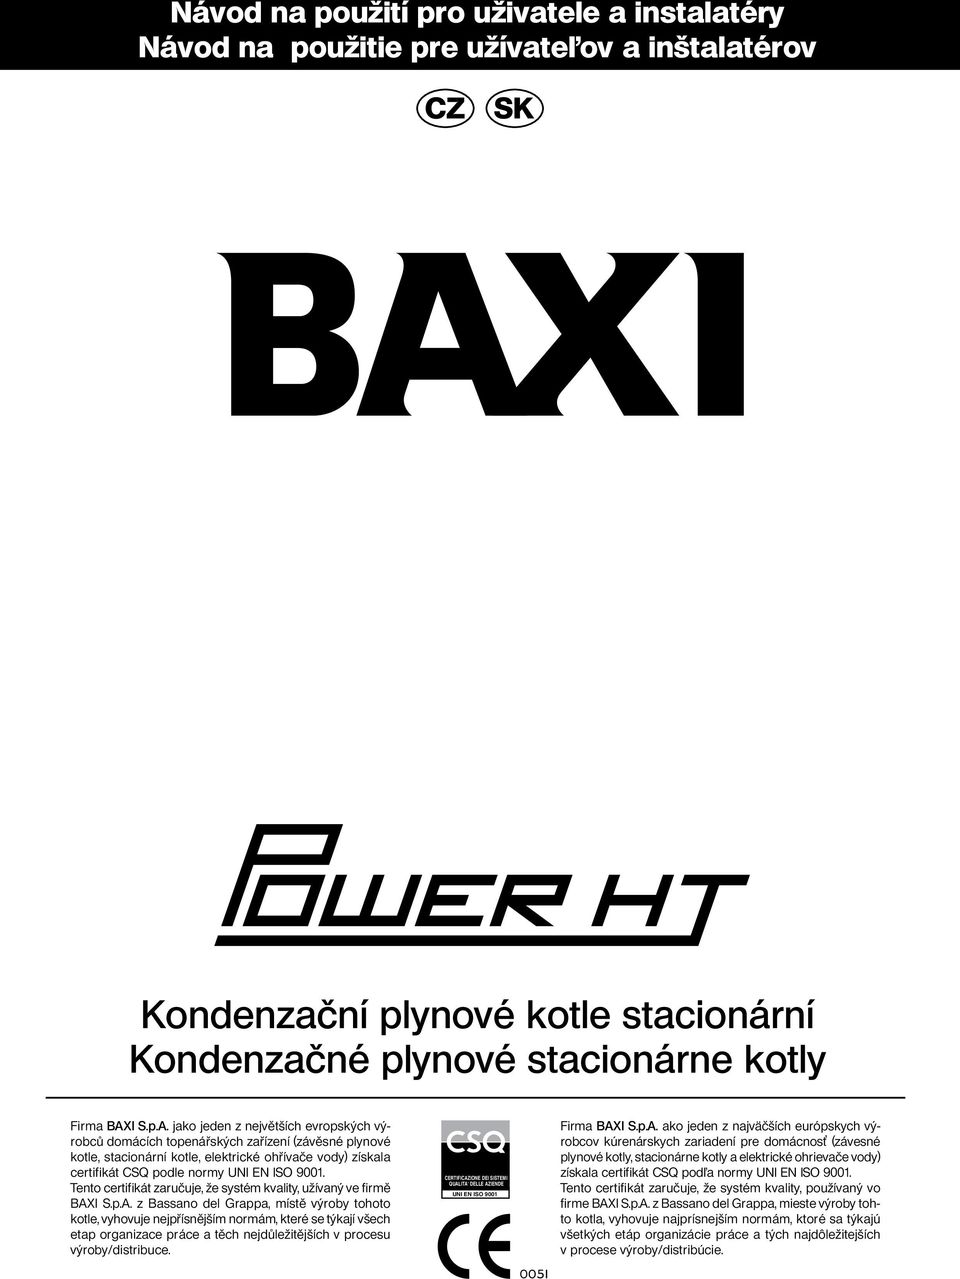 Tento certifikát zručuje, že systém kvlity, užívný ve firmě BAX